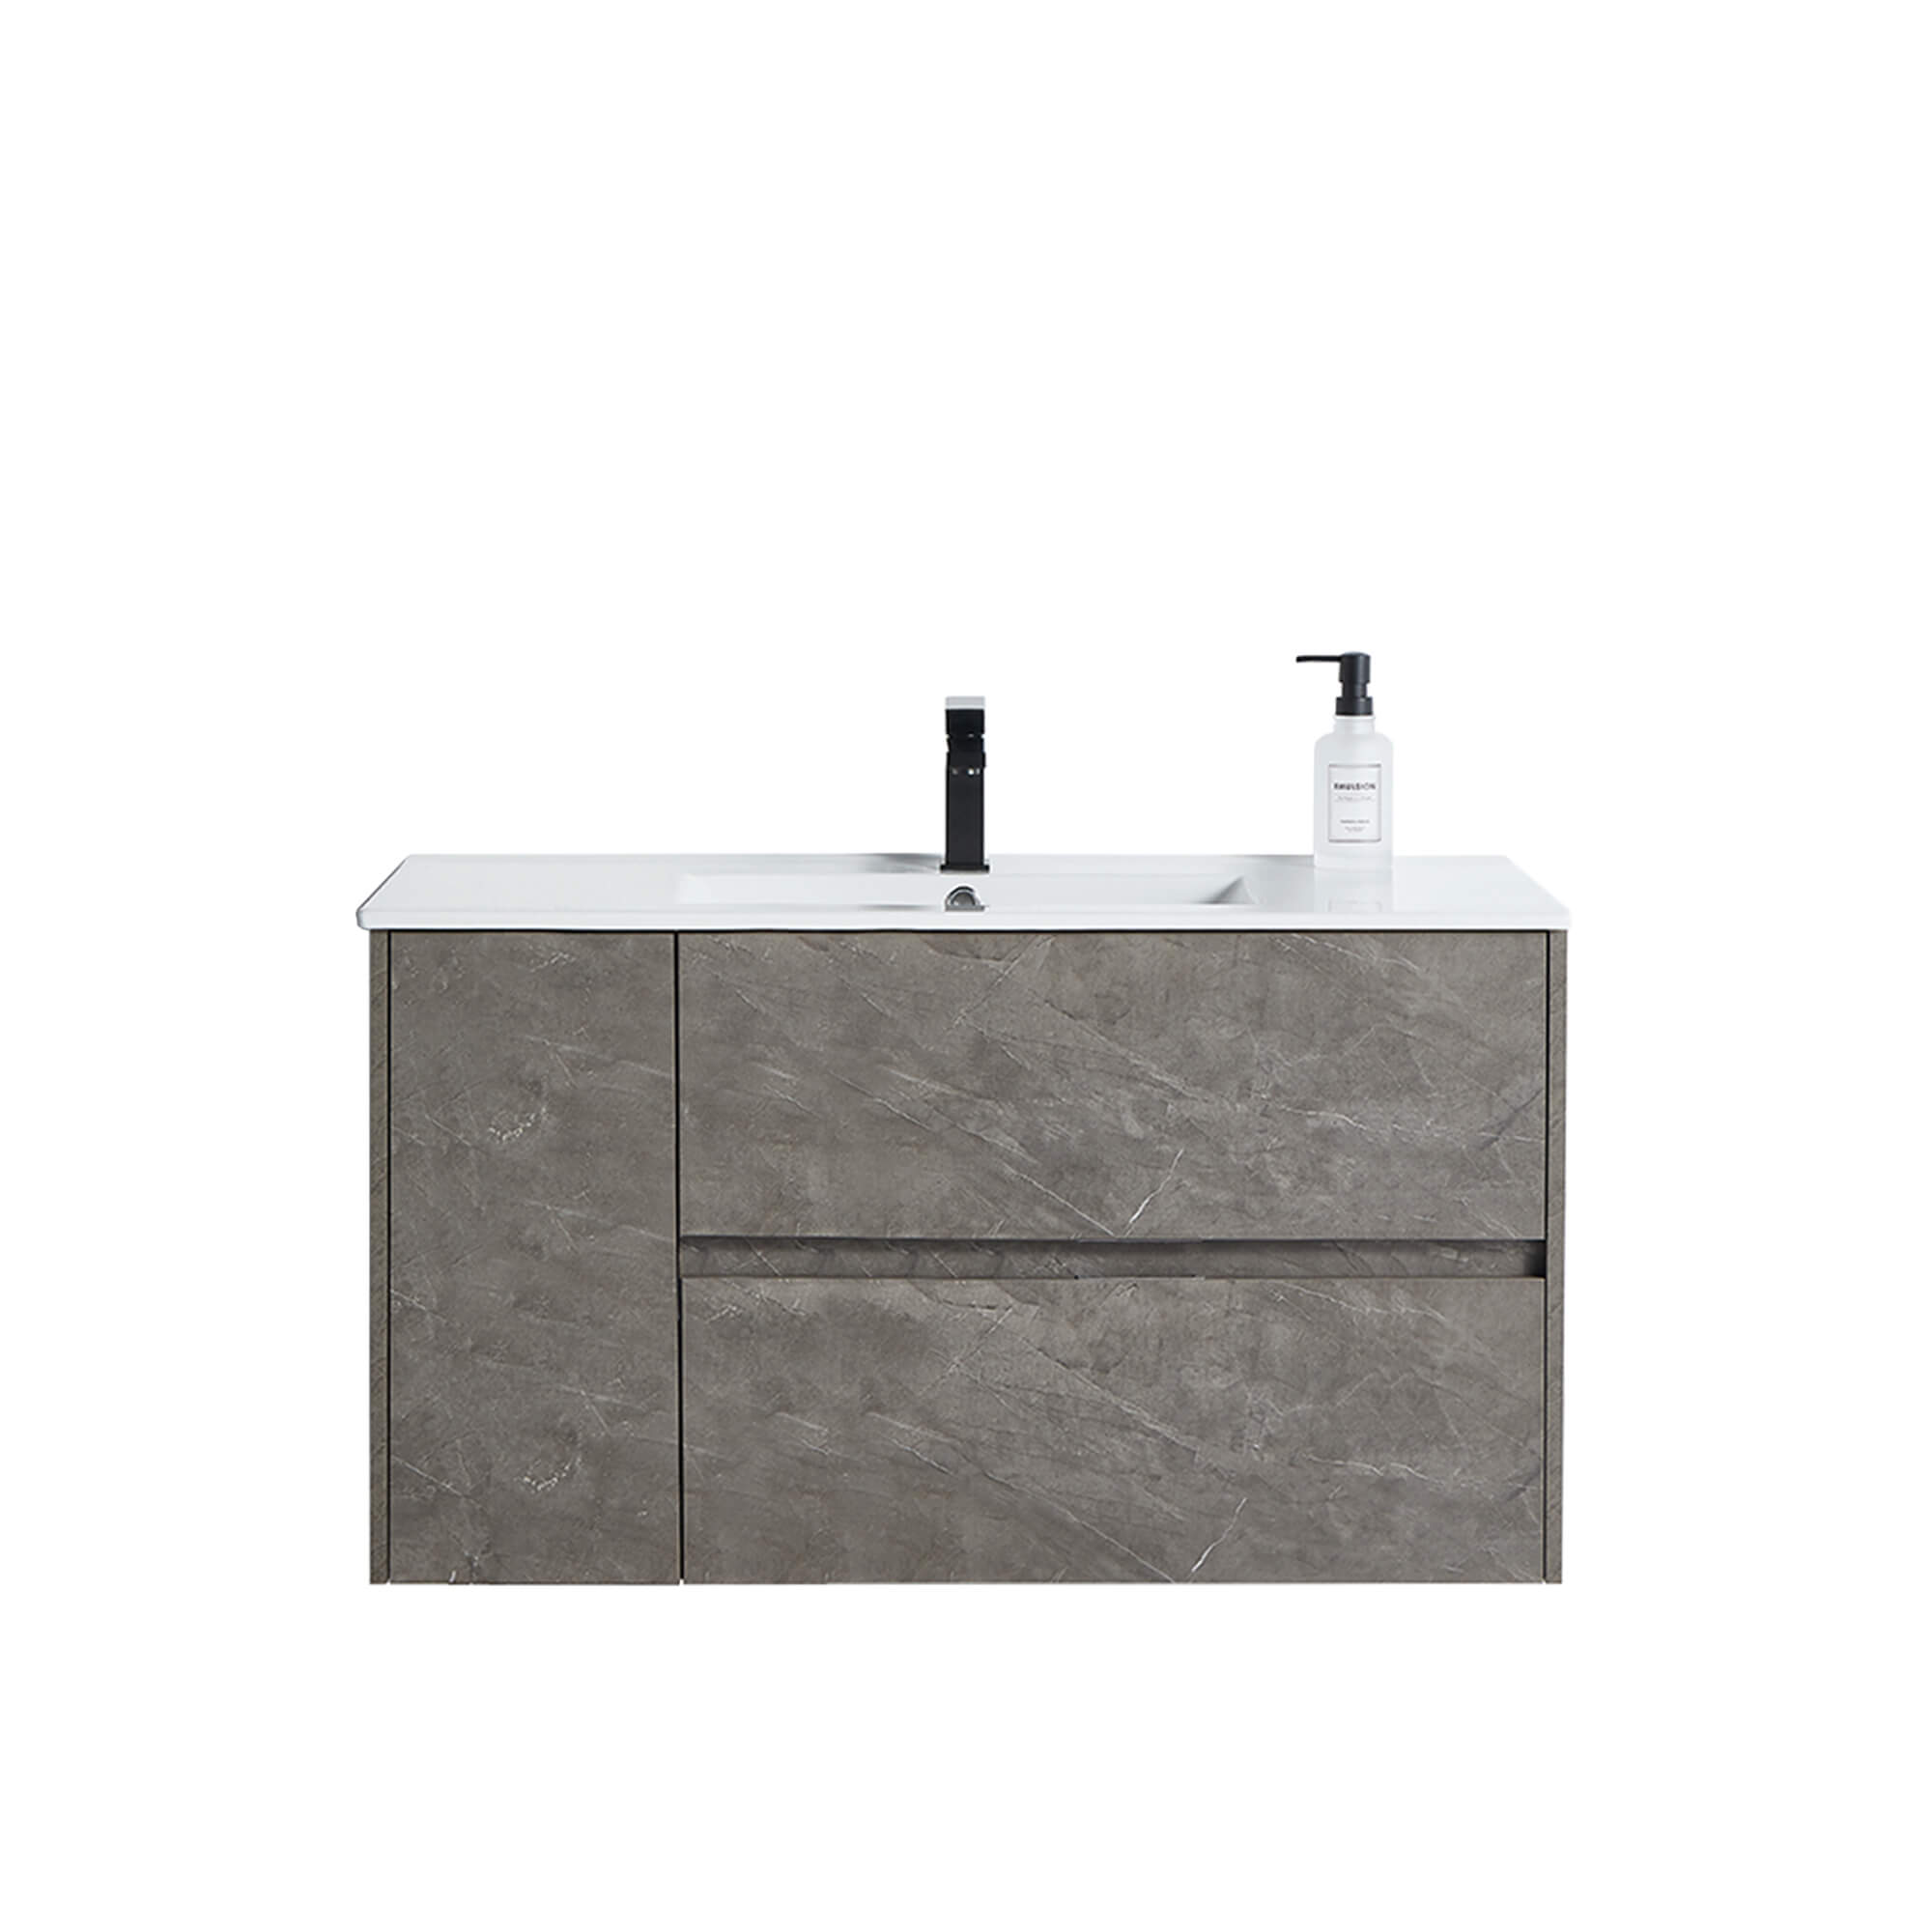 CASAINC 40-in Single Sink Bathroom Vanity in Grey Marble Grain with White Top